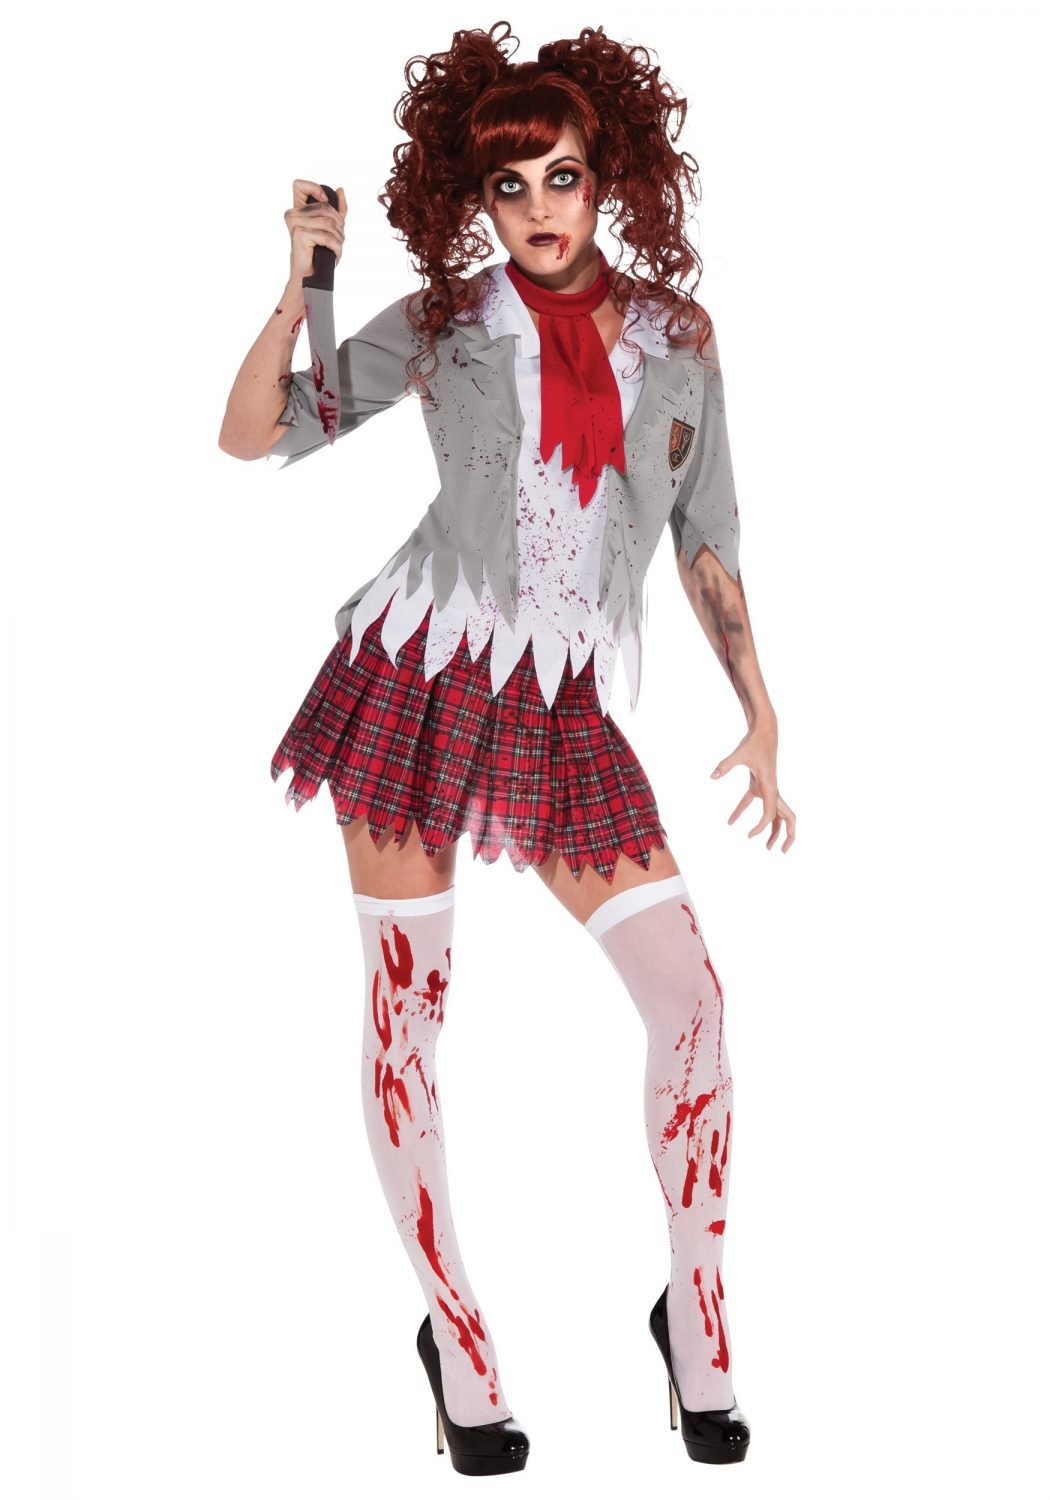 Zombie Top 10 Teenagers Halloween Costumes Trends - 12